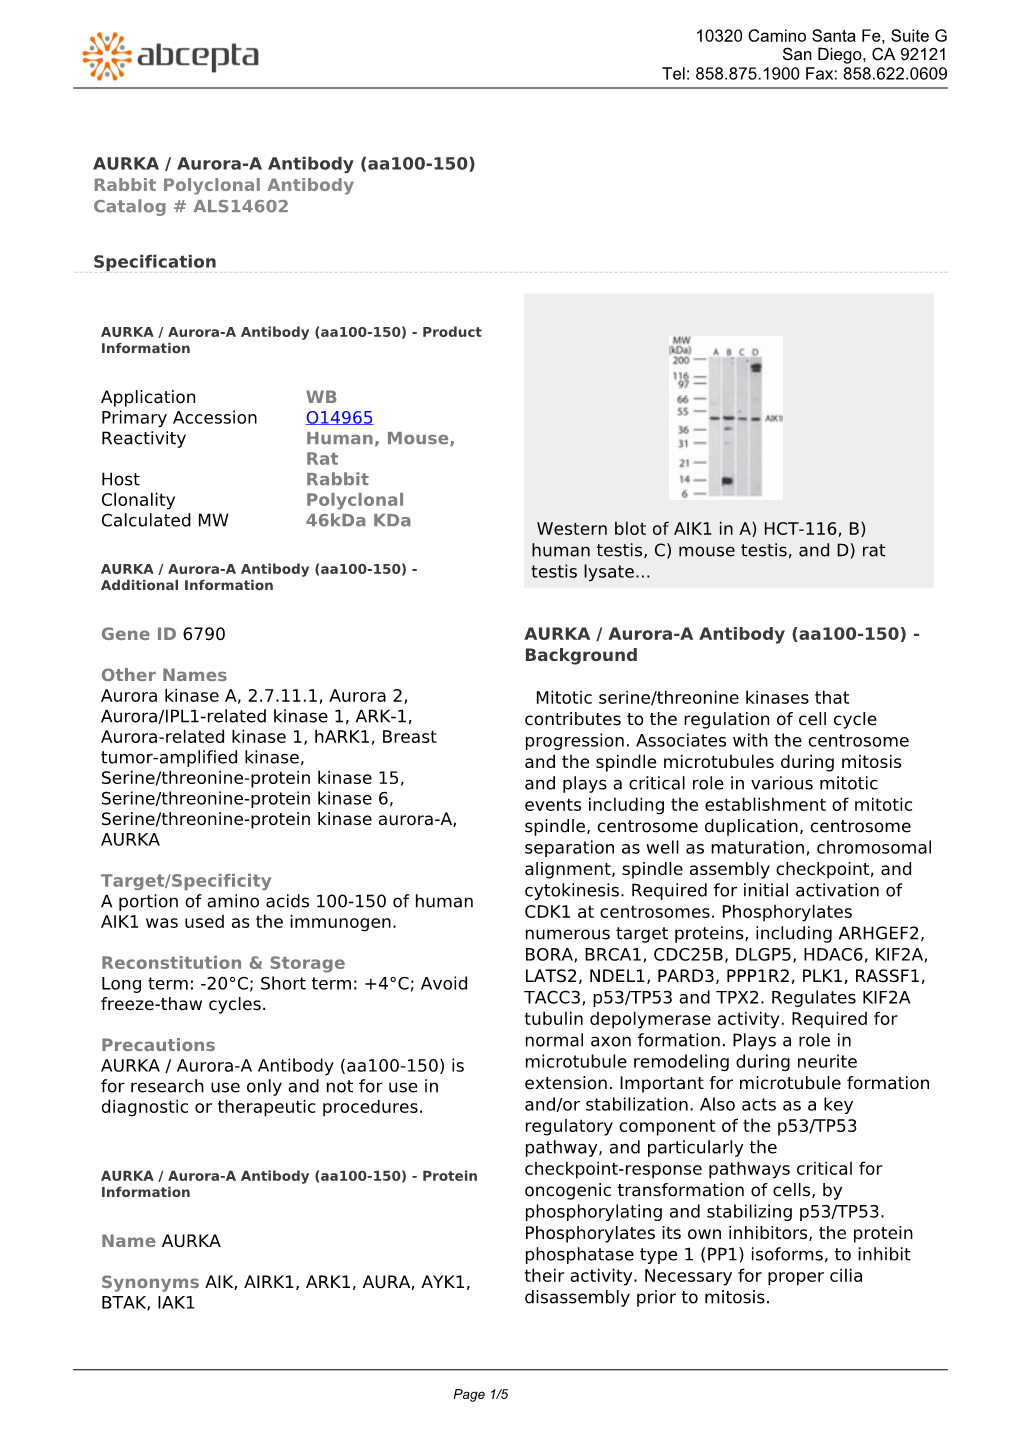 AURKA / Aurora-A Antibody (Aa100-150) Rabbit Polyclonal Antibody Catalog # ALS14602